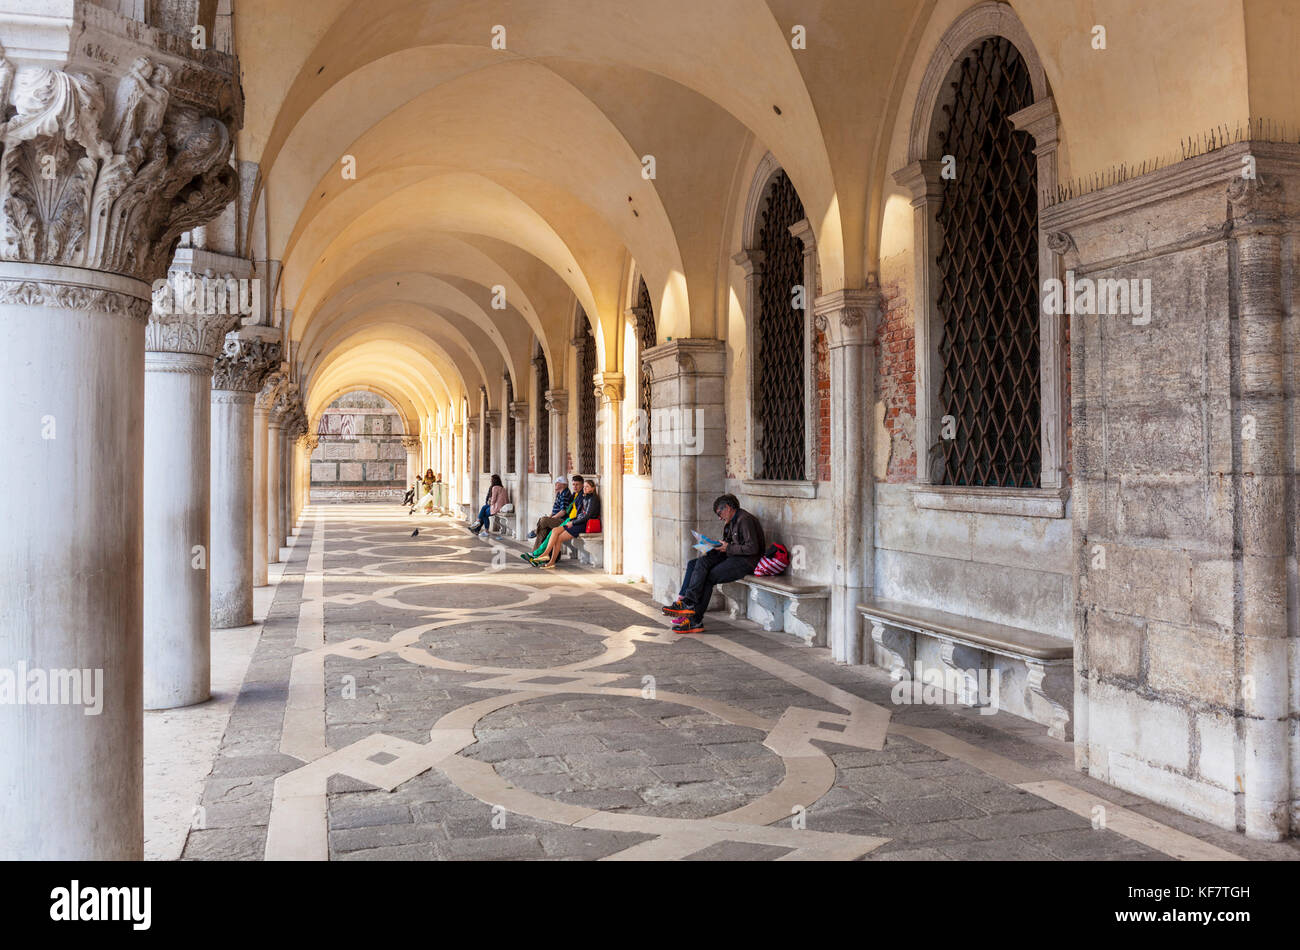 Venise ITALIE VENISE Les gens assis sous les arches dans l'arche portique du Palais des Doges (Palazzo Ducale) Place Saint Marc Venise Italie Europe de l'UE Banque D'Images